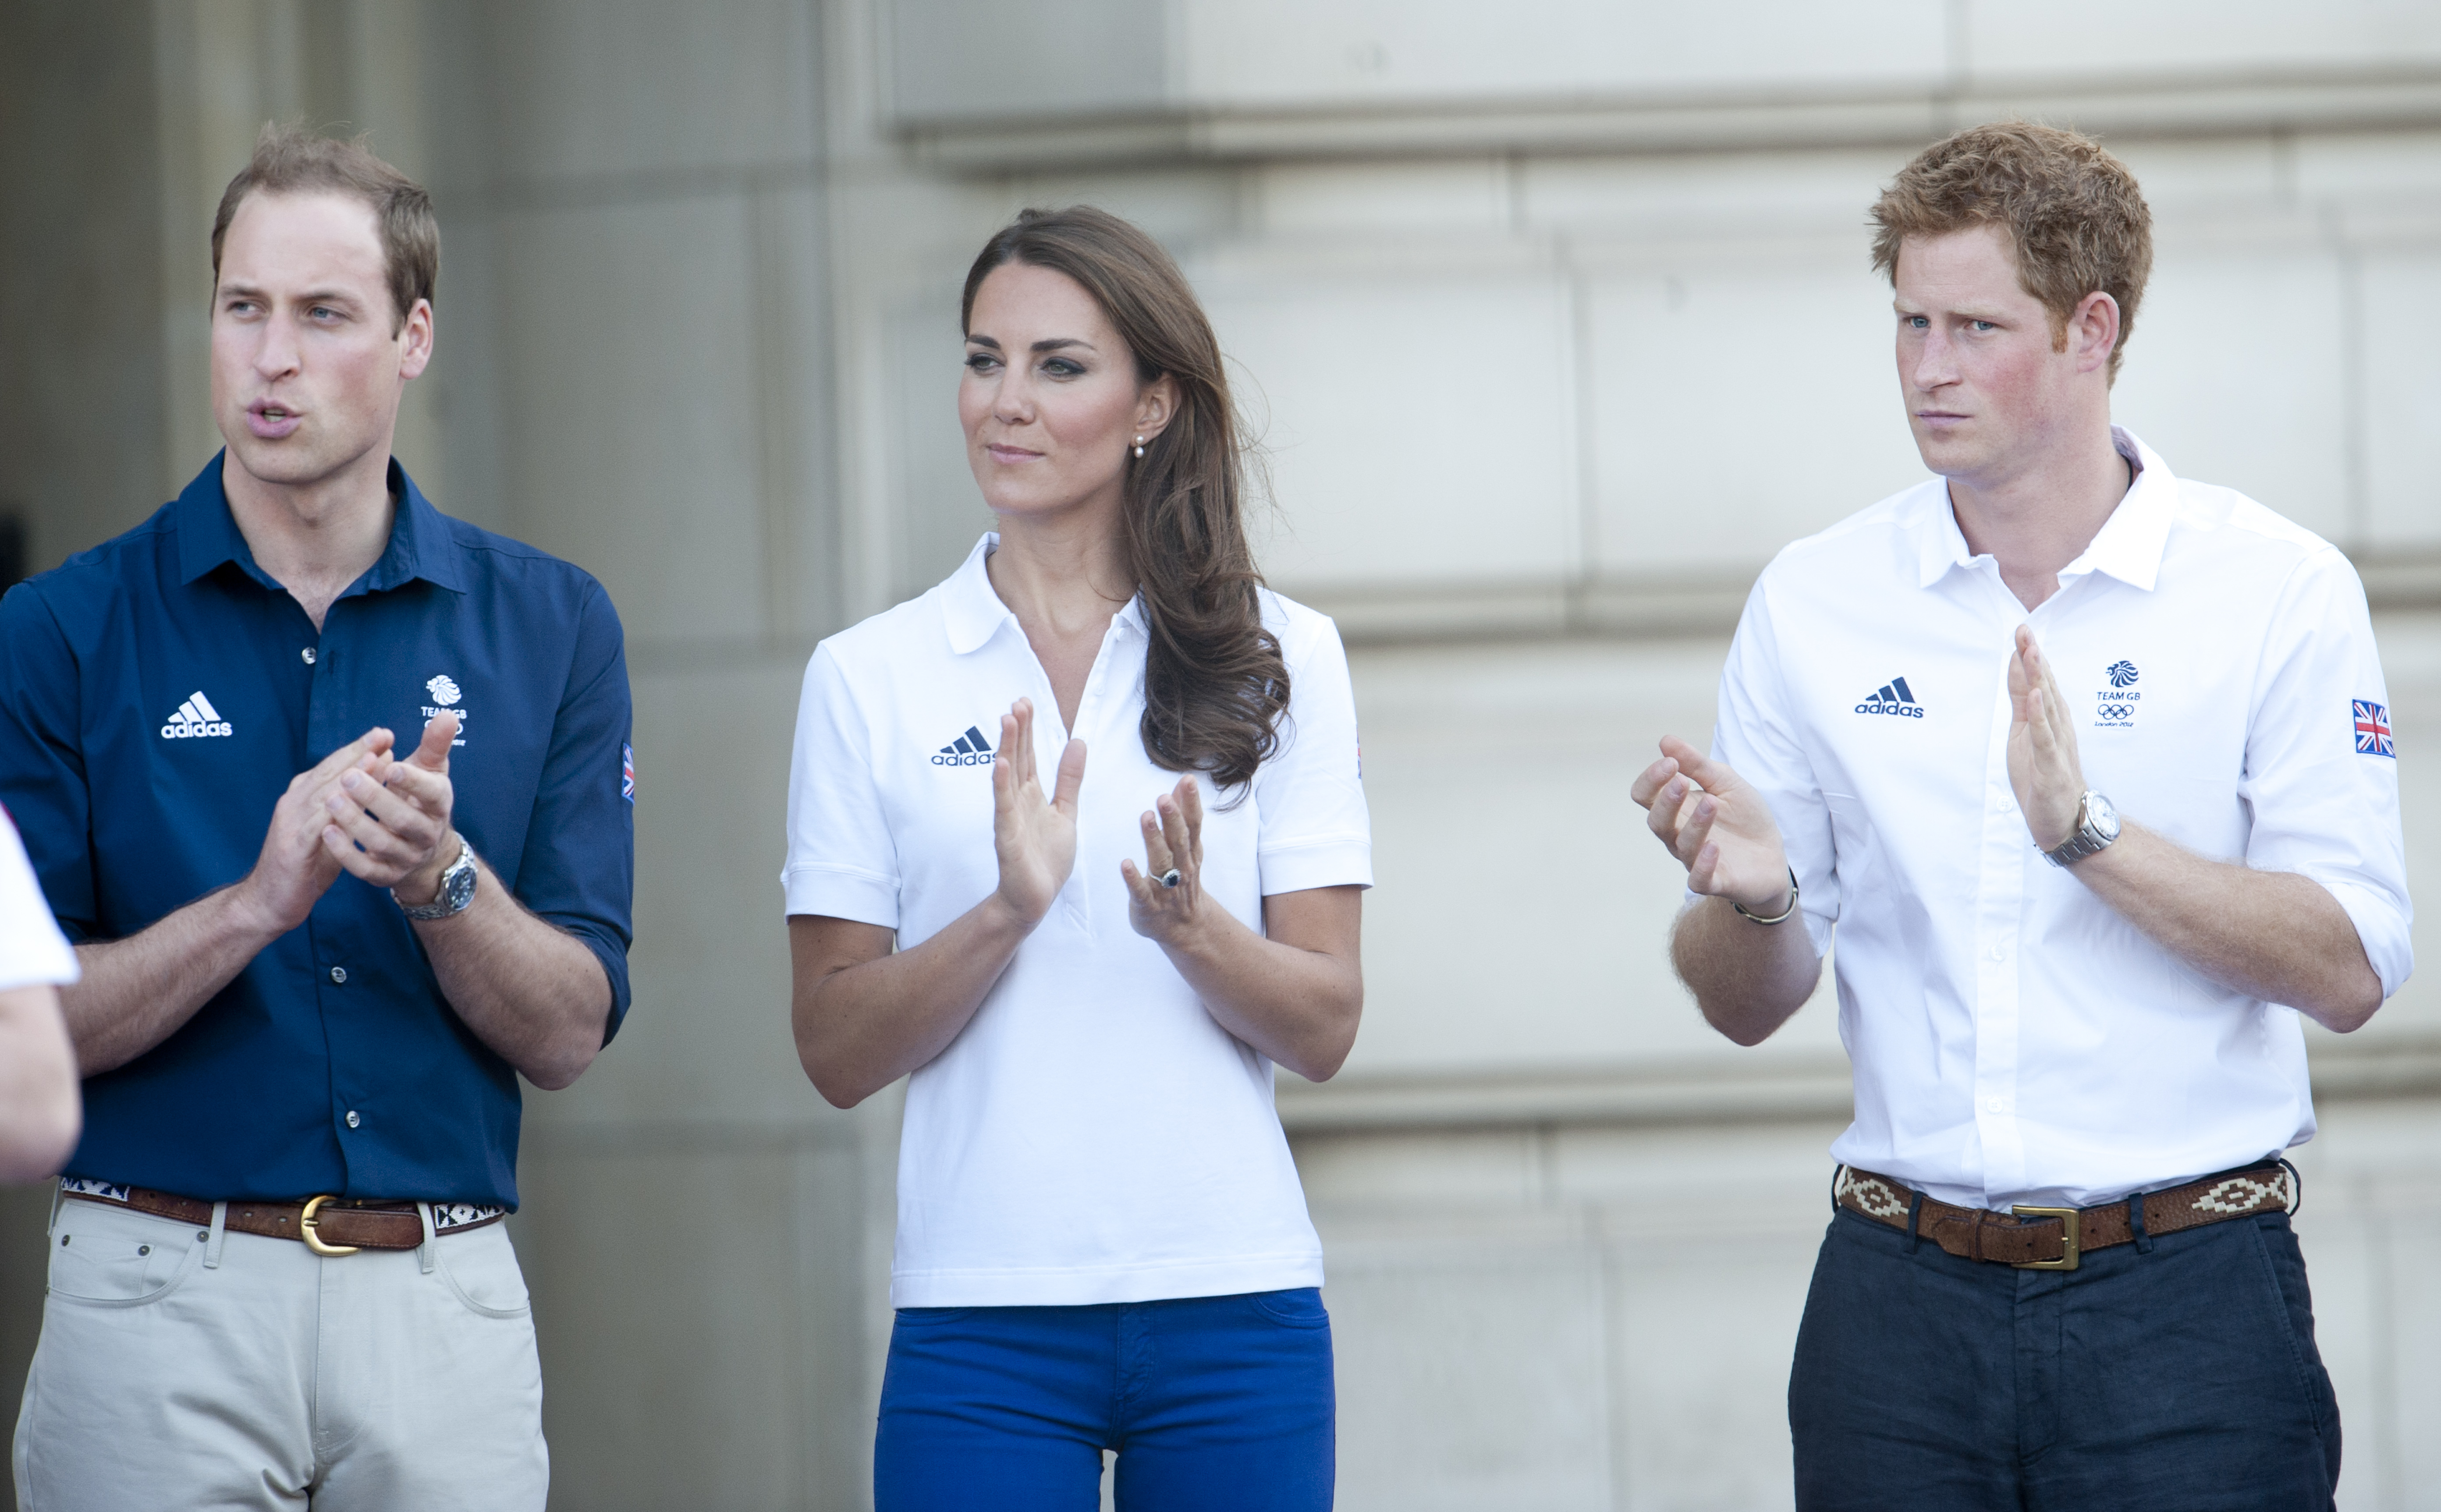 Prinz William, Prinzessin Catherine und Prinz Harry beim olympischen Fackellauf in London 2012 | Quelle: Getty Images